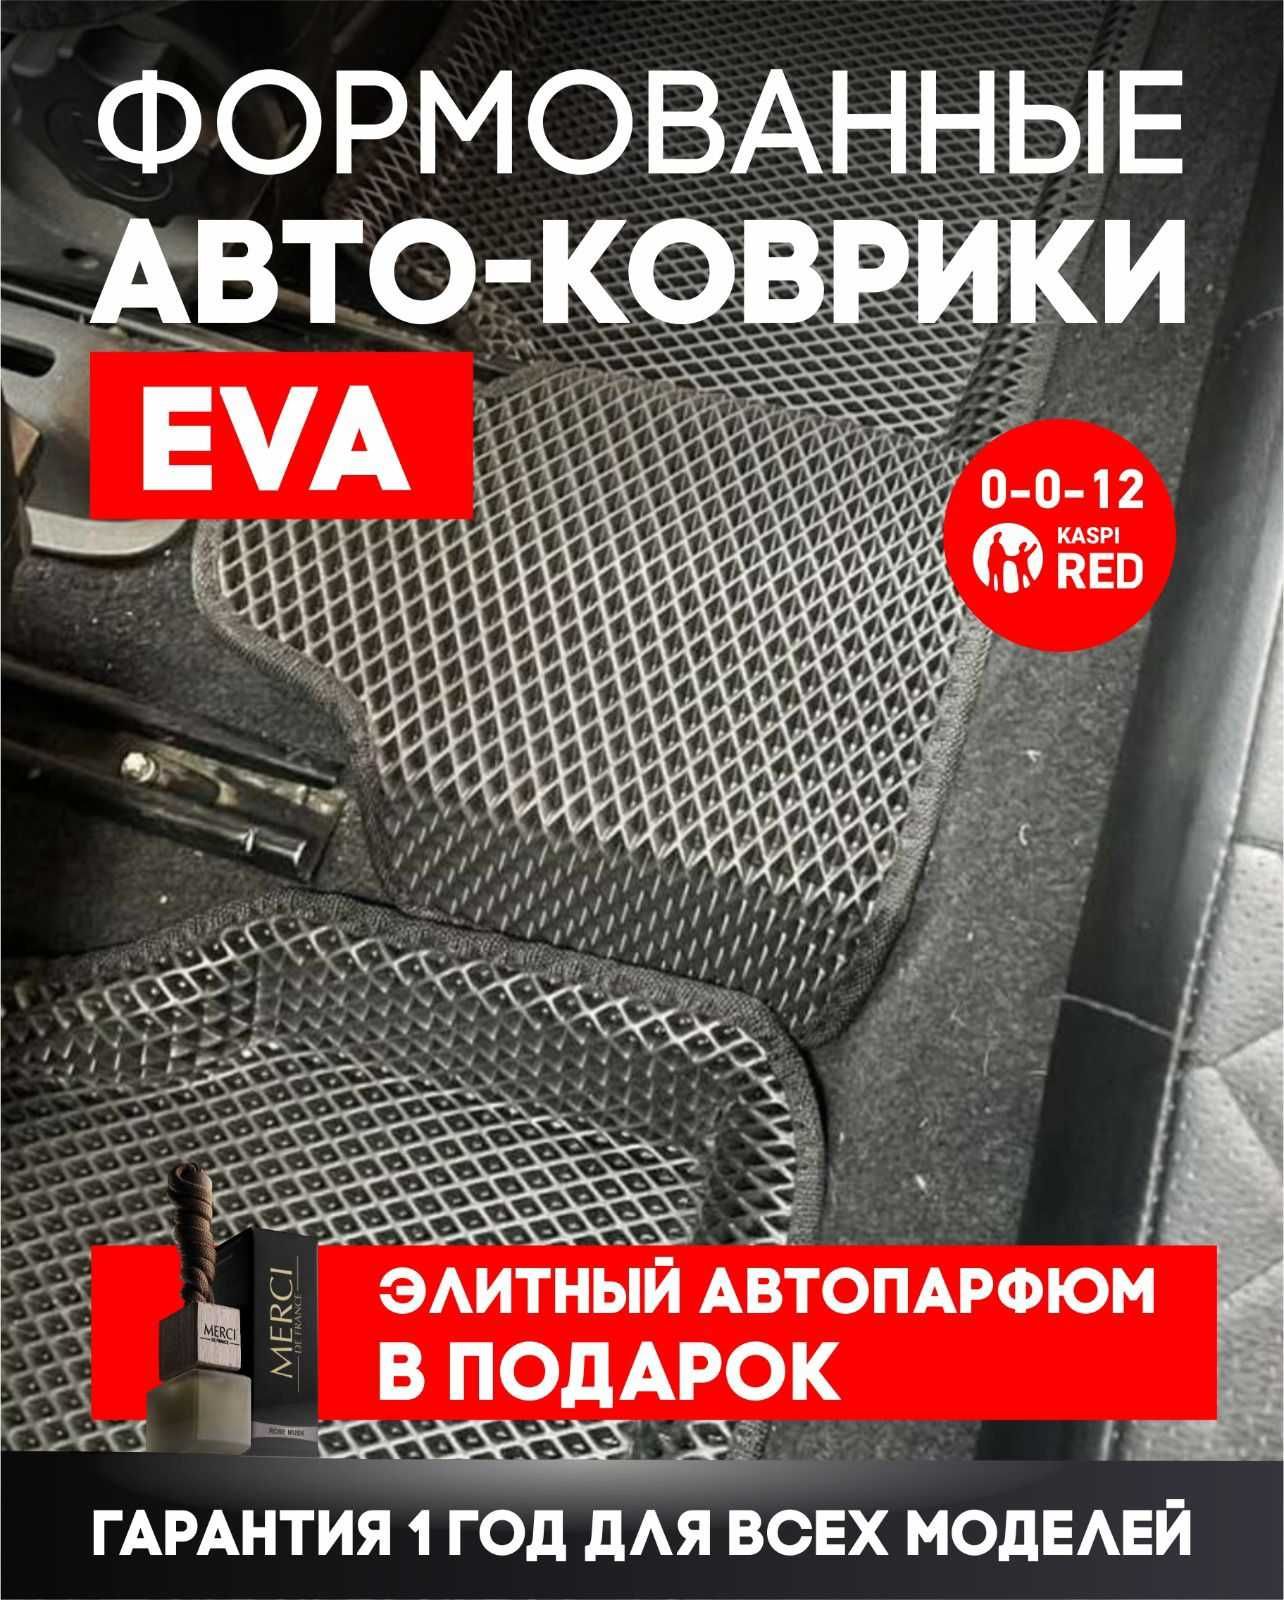 Авто полики EVA ФОРМОВАНЫЕ(ЭВА,ЕВА)от производителей №1 в Казахстане